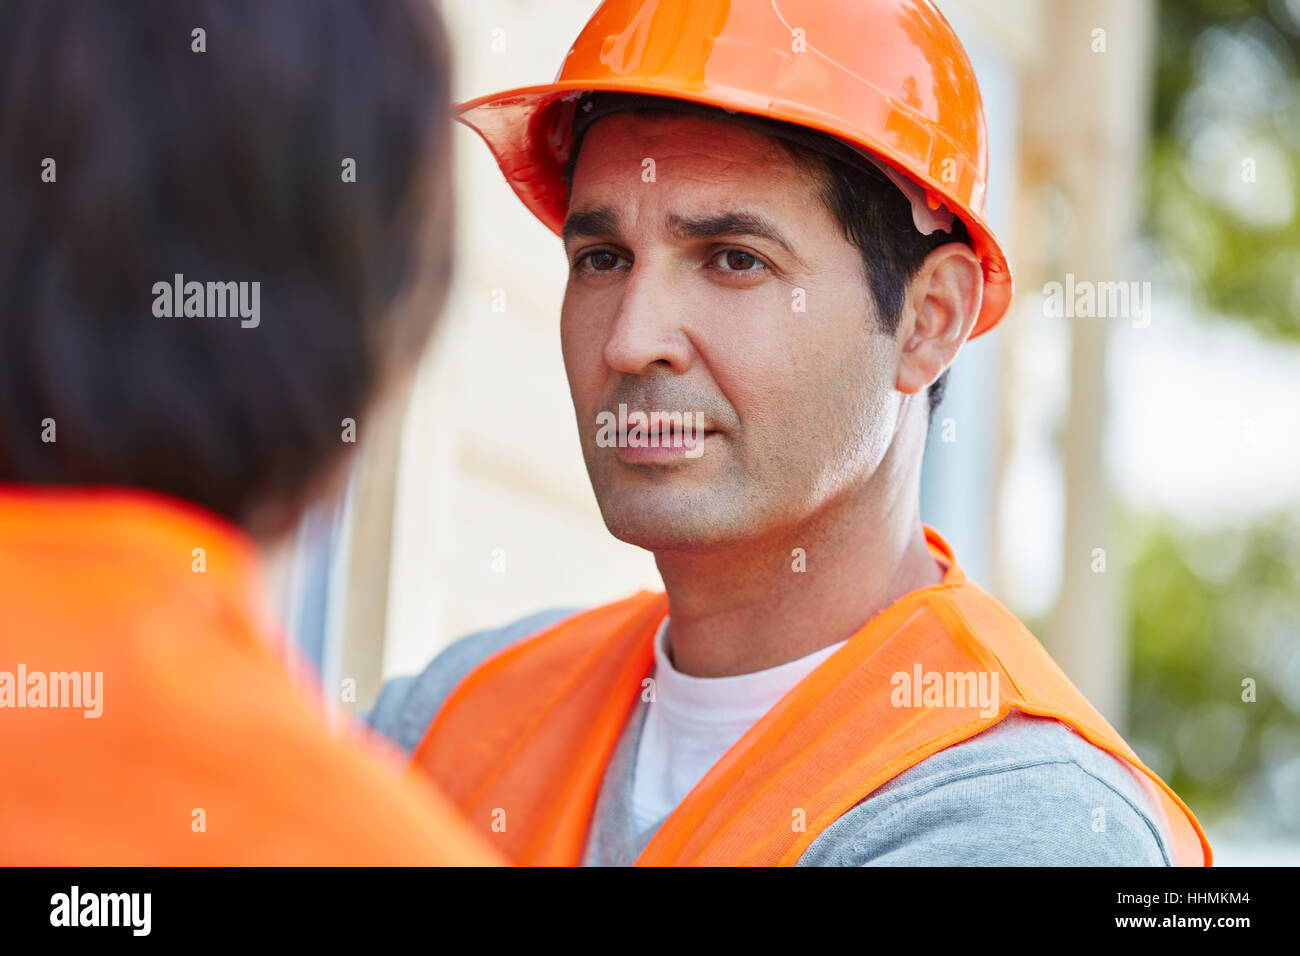 Der Mensch als Bauarbeiter mit orange Bauarbeiterhelm Stockfoto